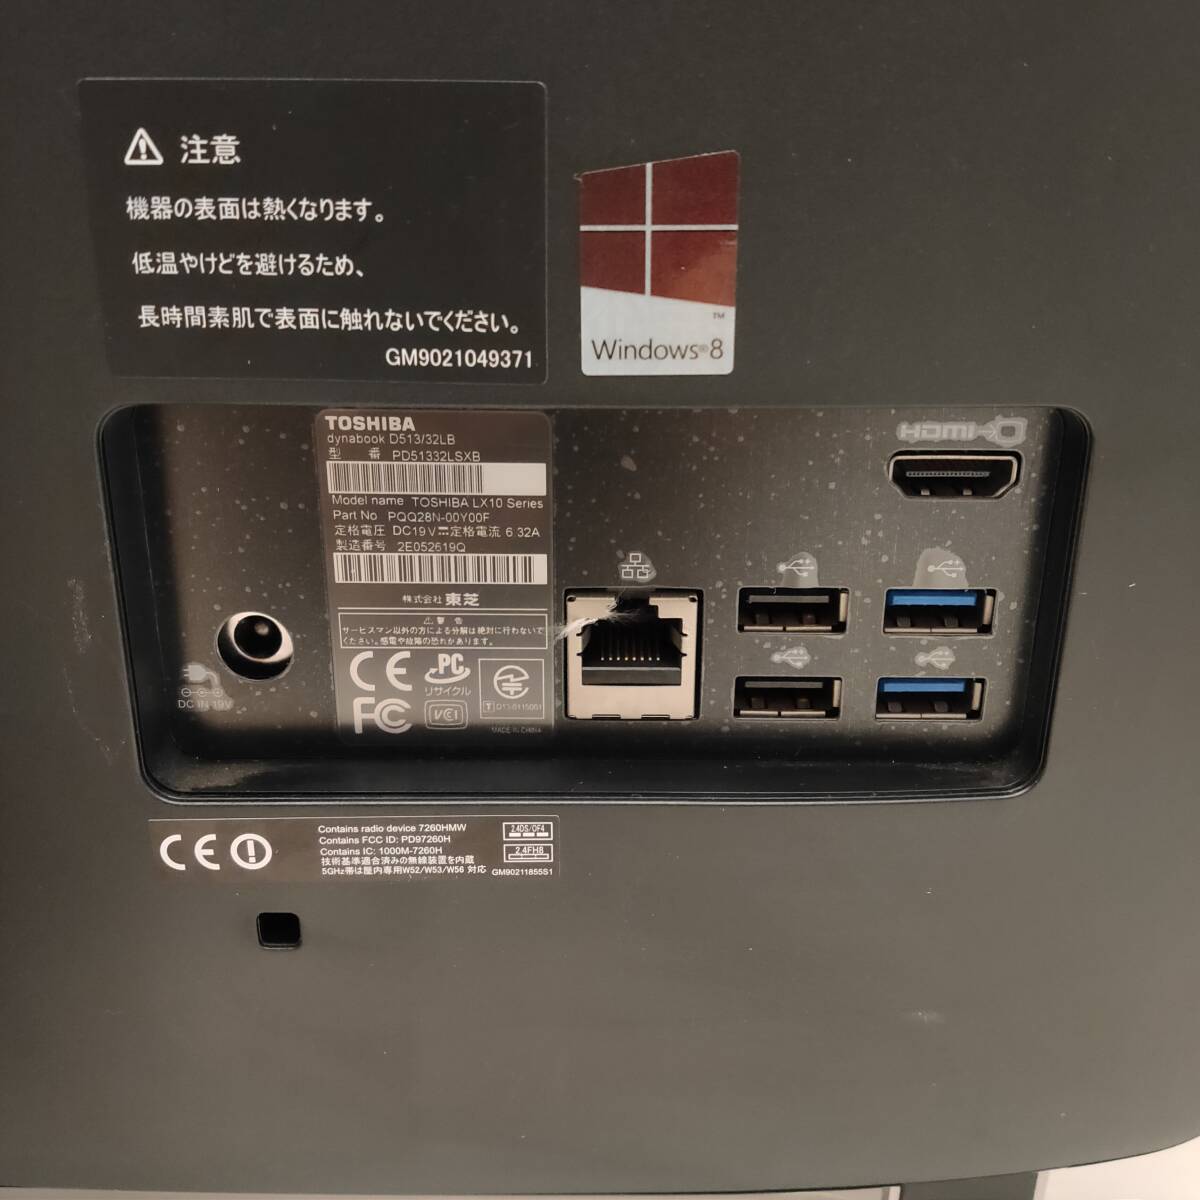 * Toshiba dynabook D513/32LB PD51332LSXB Precious черный в одном корпусе персональный компьютер Celeron 1005M 1.90GHz/4GB/1TB/windows10 с дефектом Junk *